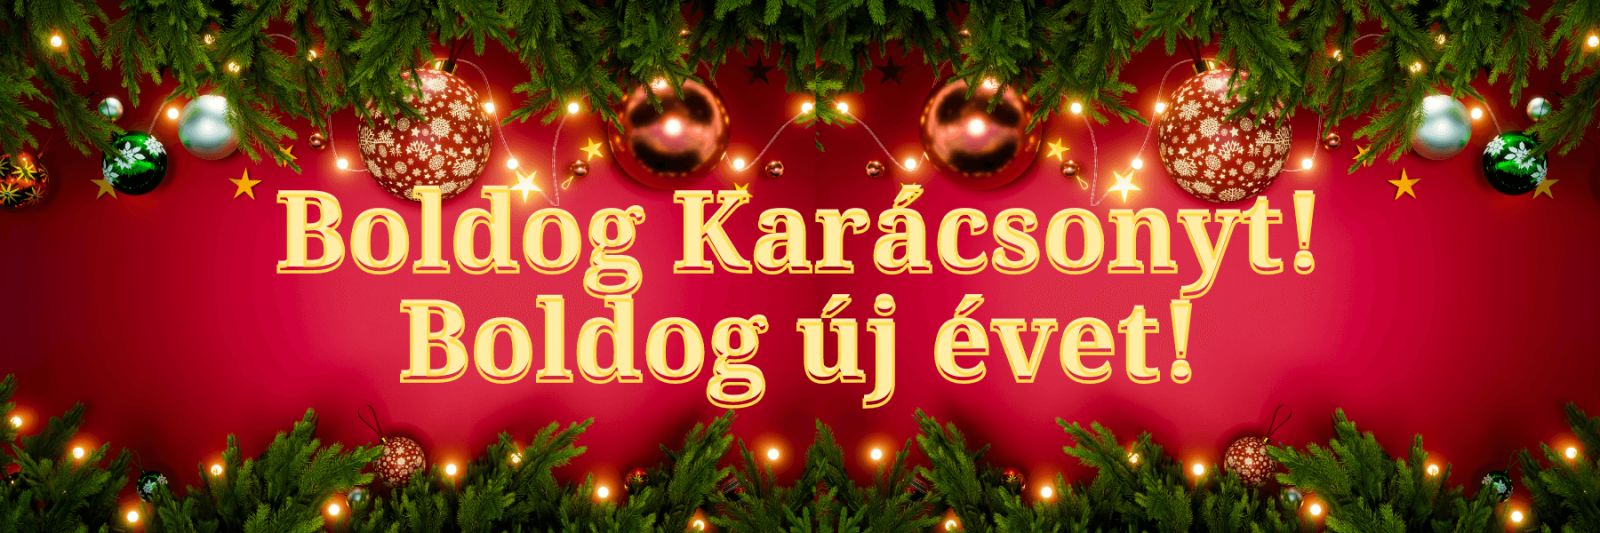 Joyeux Noel et bonne année! en hongrois